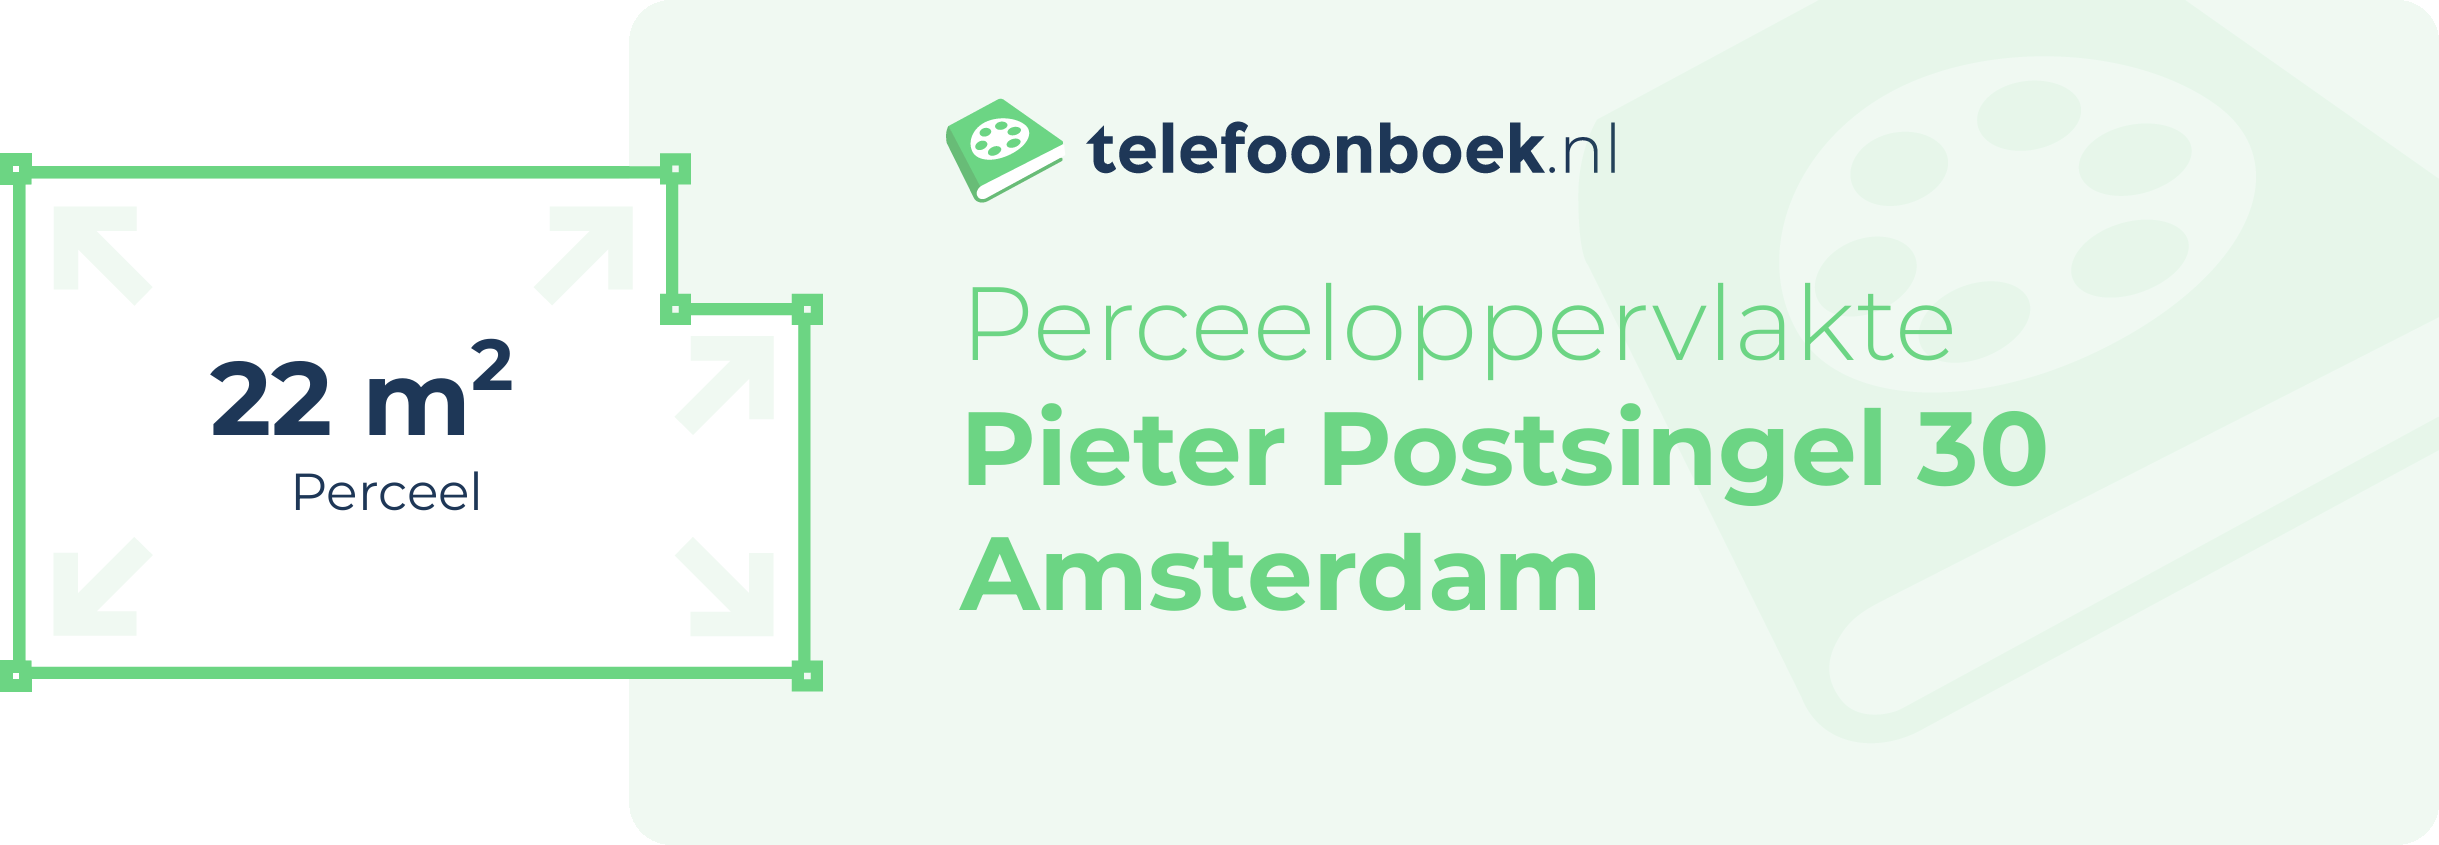 Perceeloppervlakte Pieter Postsingel 30 Amsterdam